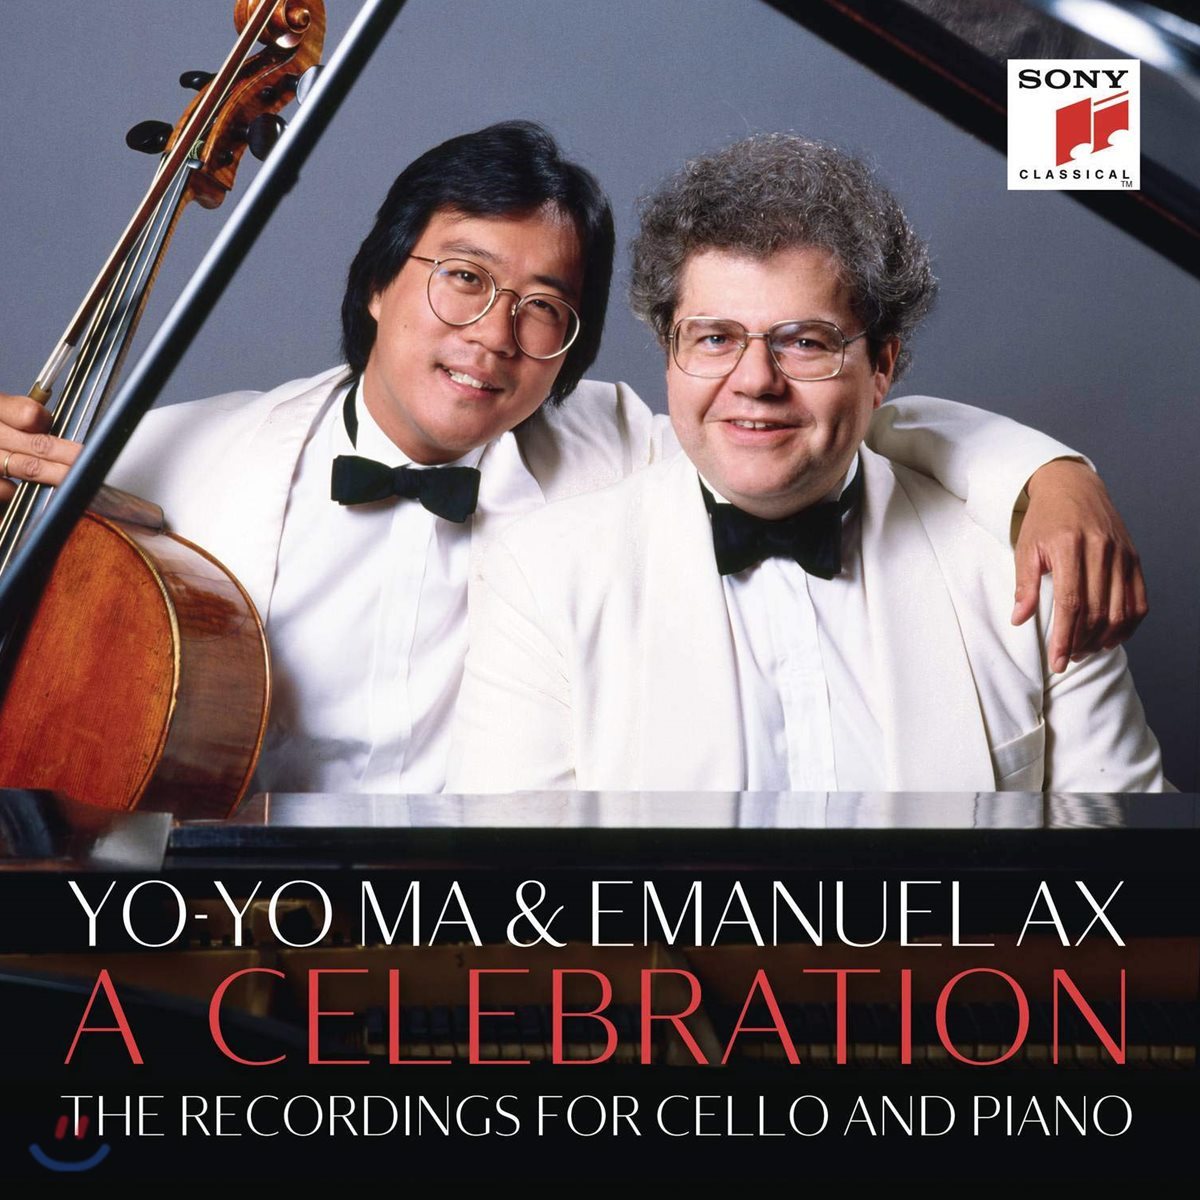 요요마 & 엠마누엘 엑스 - 첼로와 피아노 듀오 녹음집 (Emanuel Ax / Yo-Yo Ma - A Celebration)